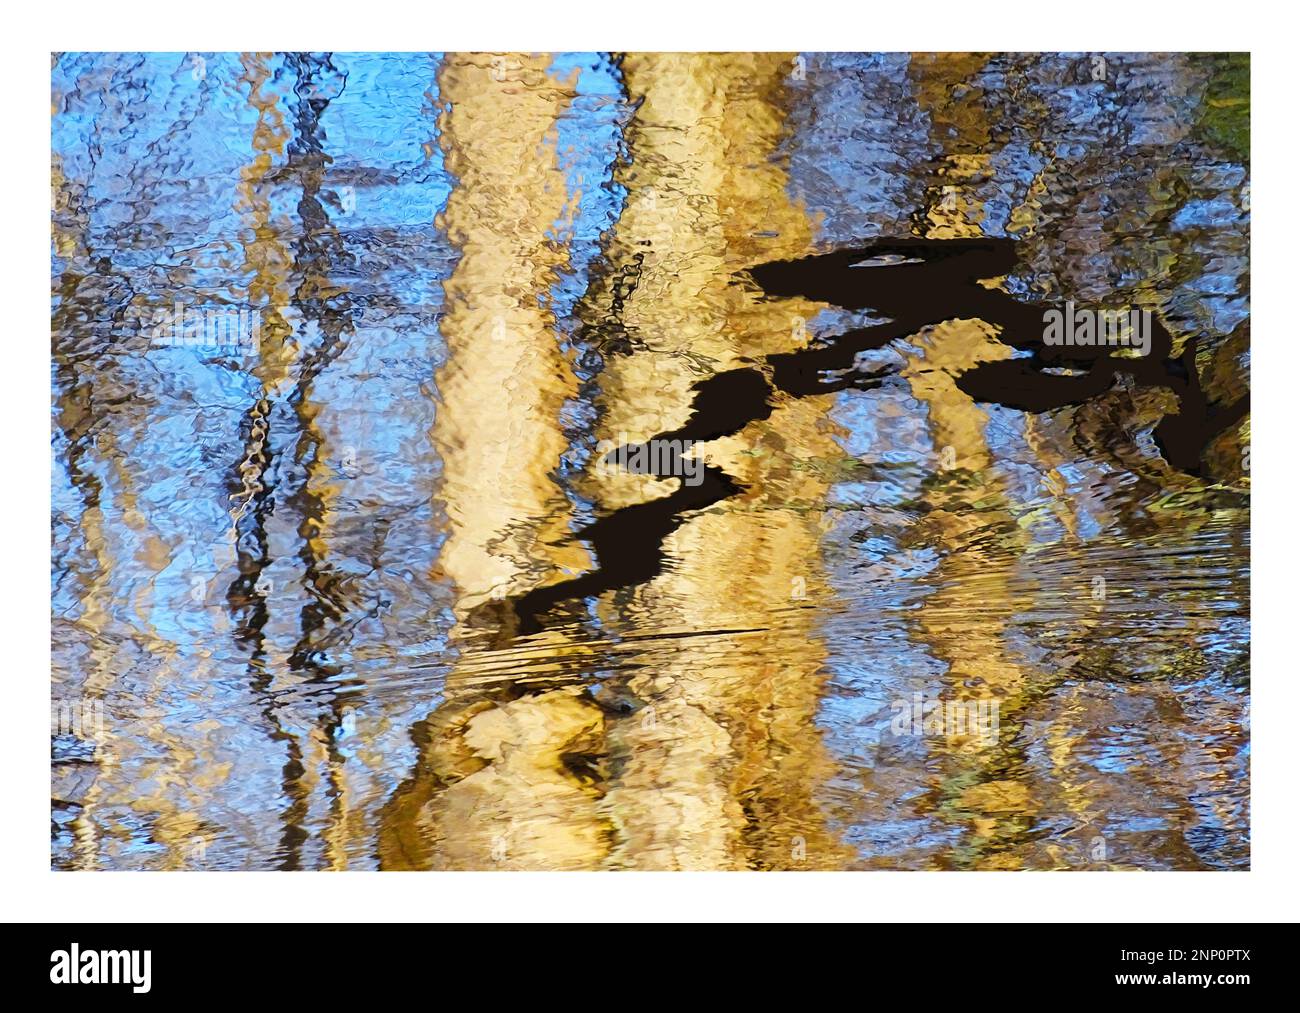 Fotografia astratta di increspature e riflessi nell'acqua Foto Stock